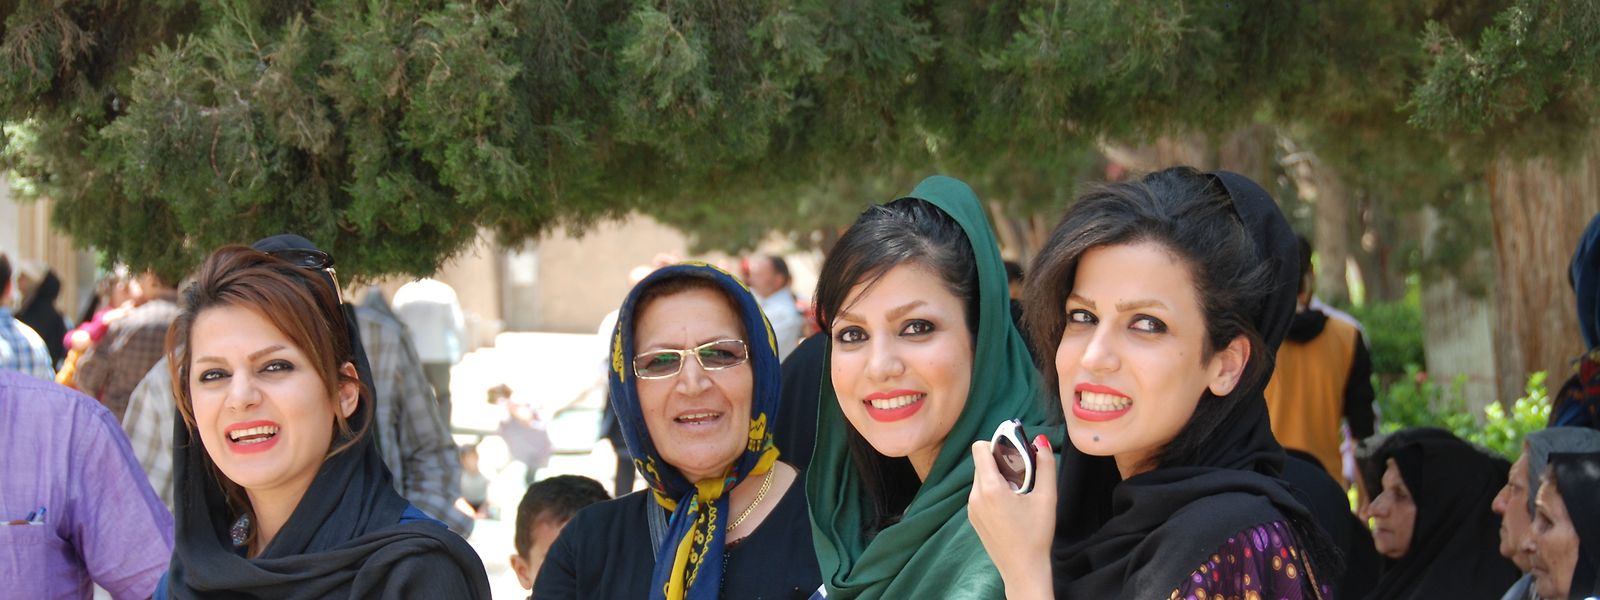 Iranische Frauen, die, wie auf dem Bild zu sehen, ihr Haar nicht vollständig mit einem Kopftuch verhüllen, sollen künftig mit Hilfe von Gesichtserkennungstechnologie identifiziert – und bestraft werden.